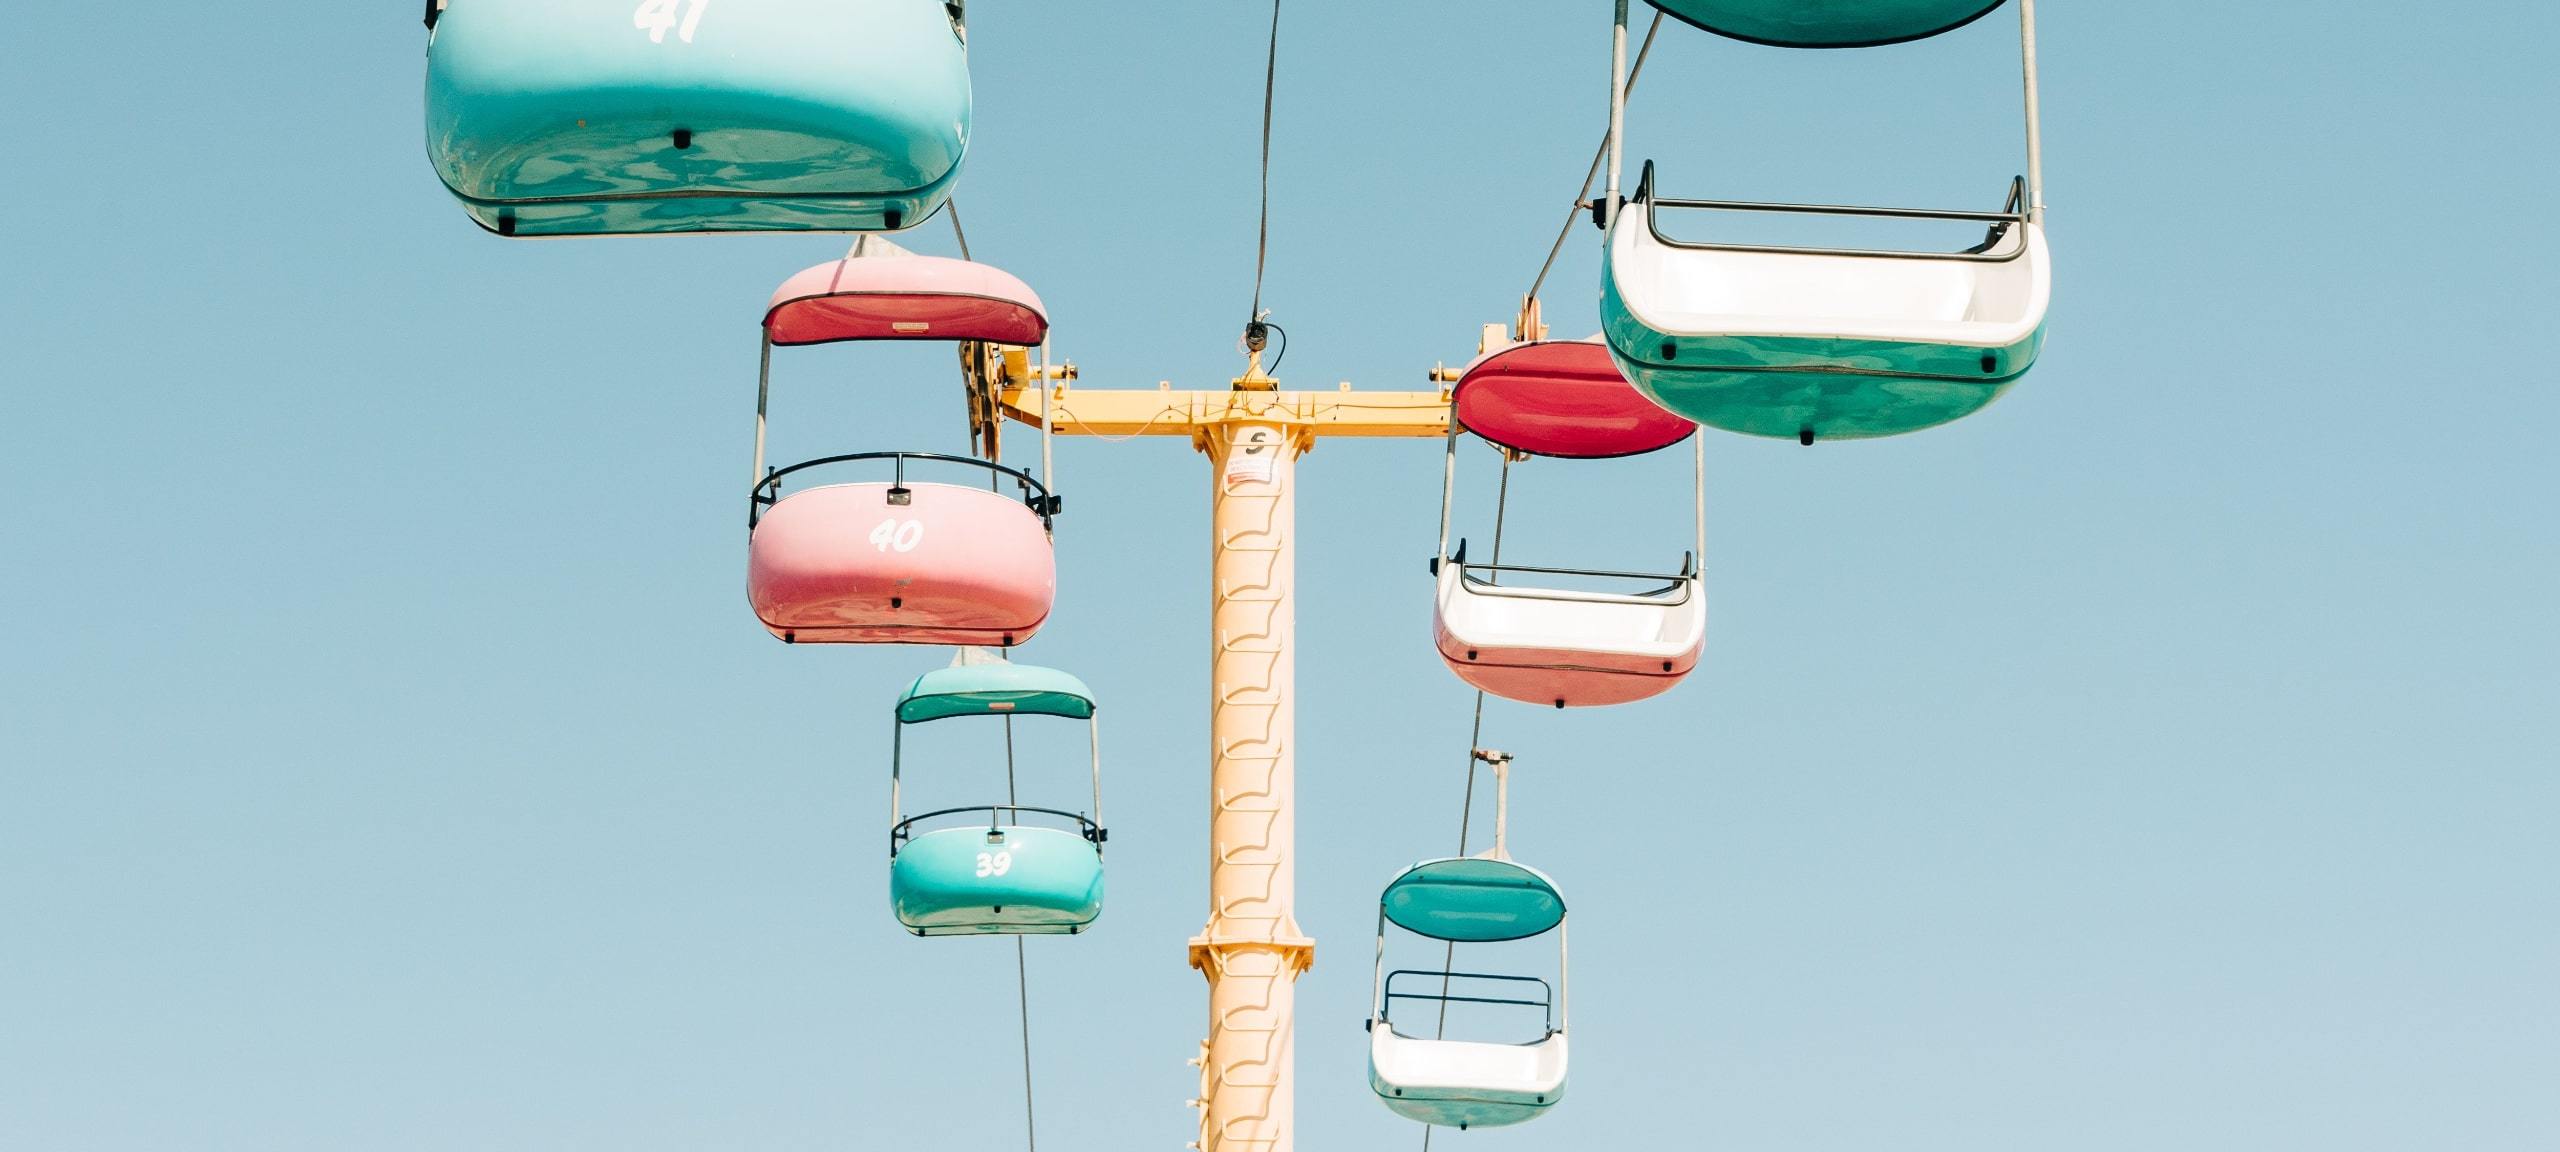 Pastel swings on ride at Santa Cruz Boardwalk with blue sky